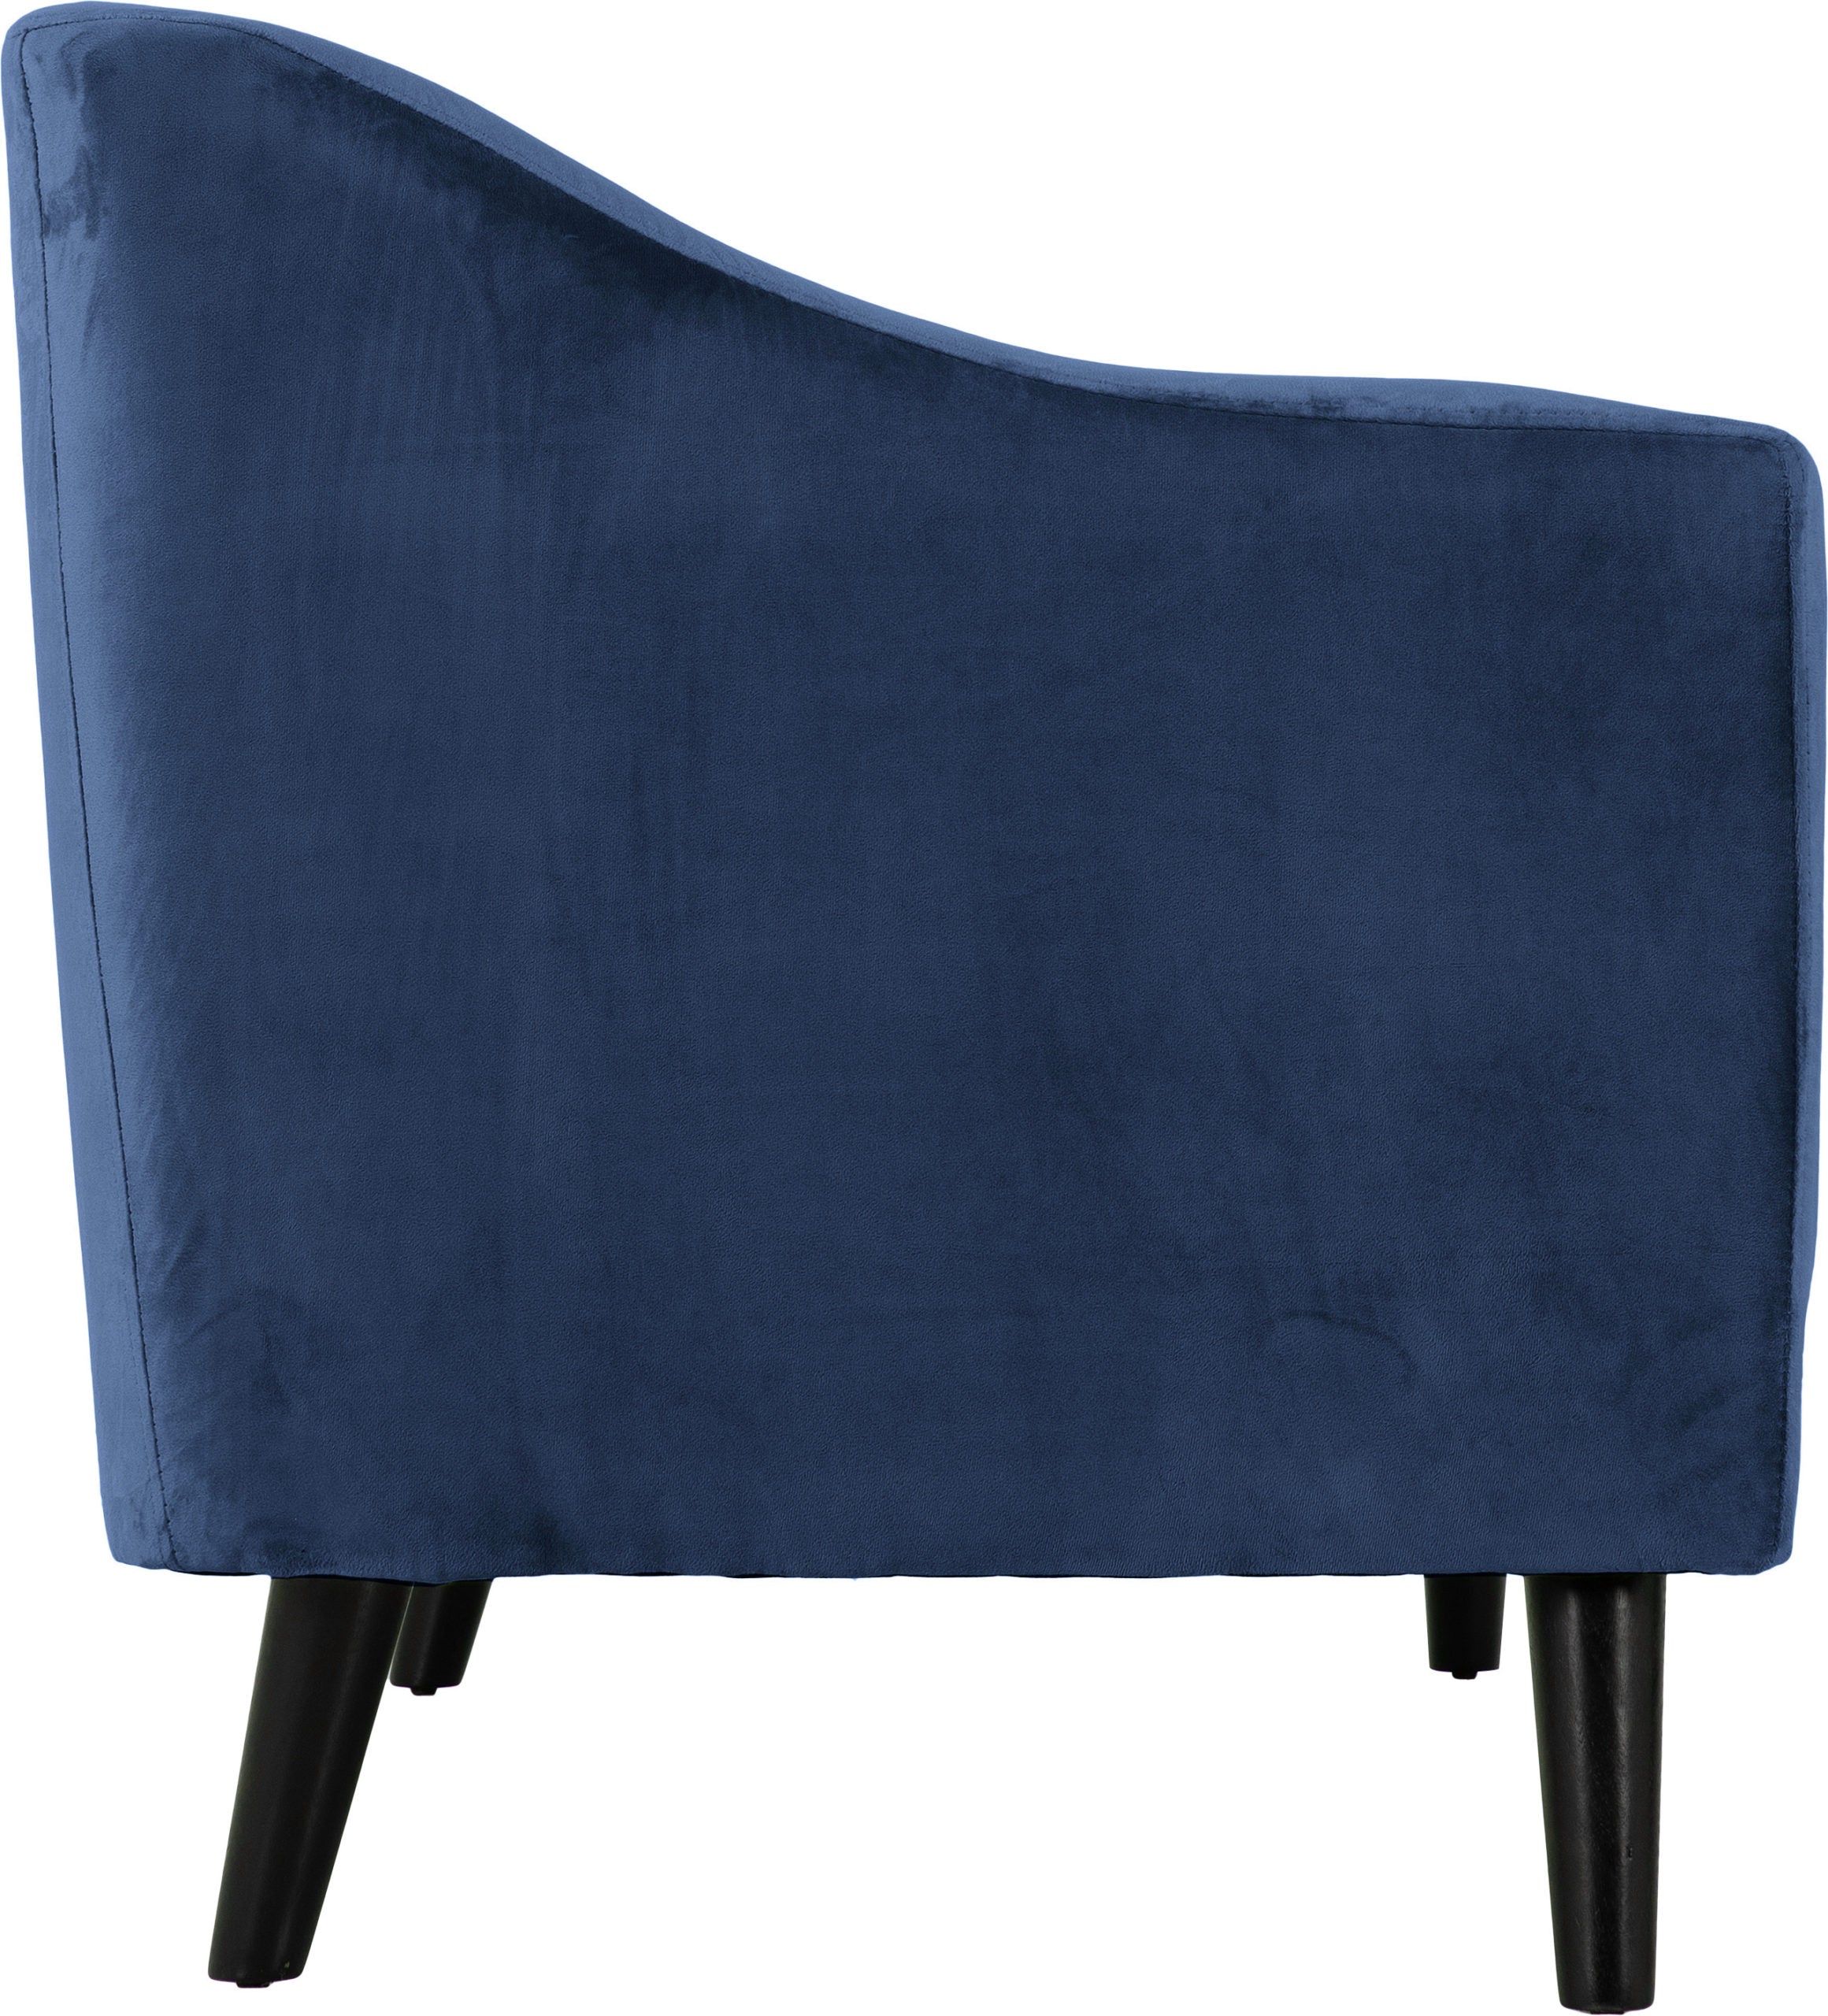 Ashley 3 Seater Sofa Blue Velvet Fabric